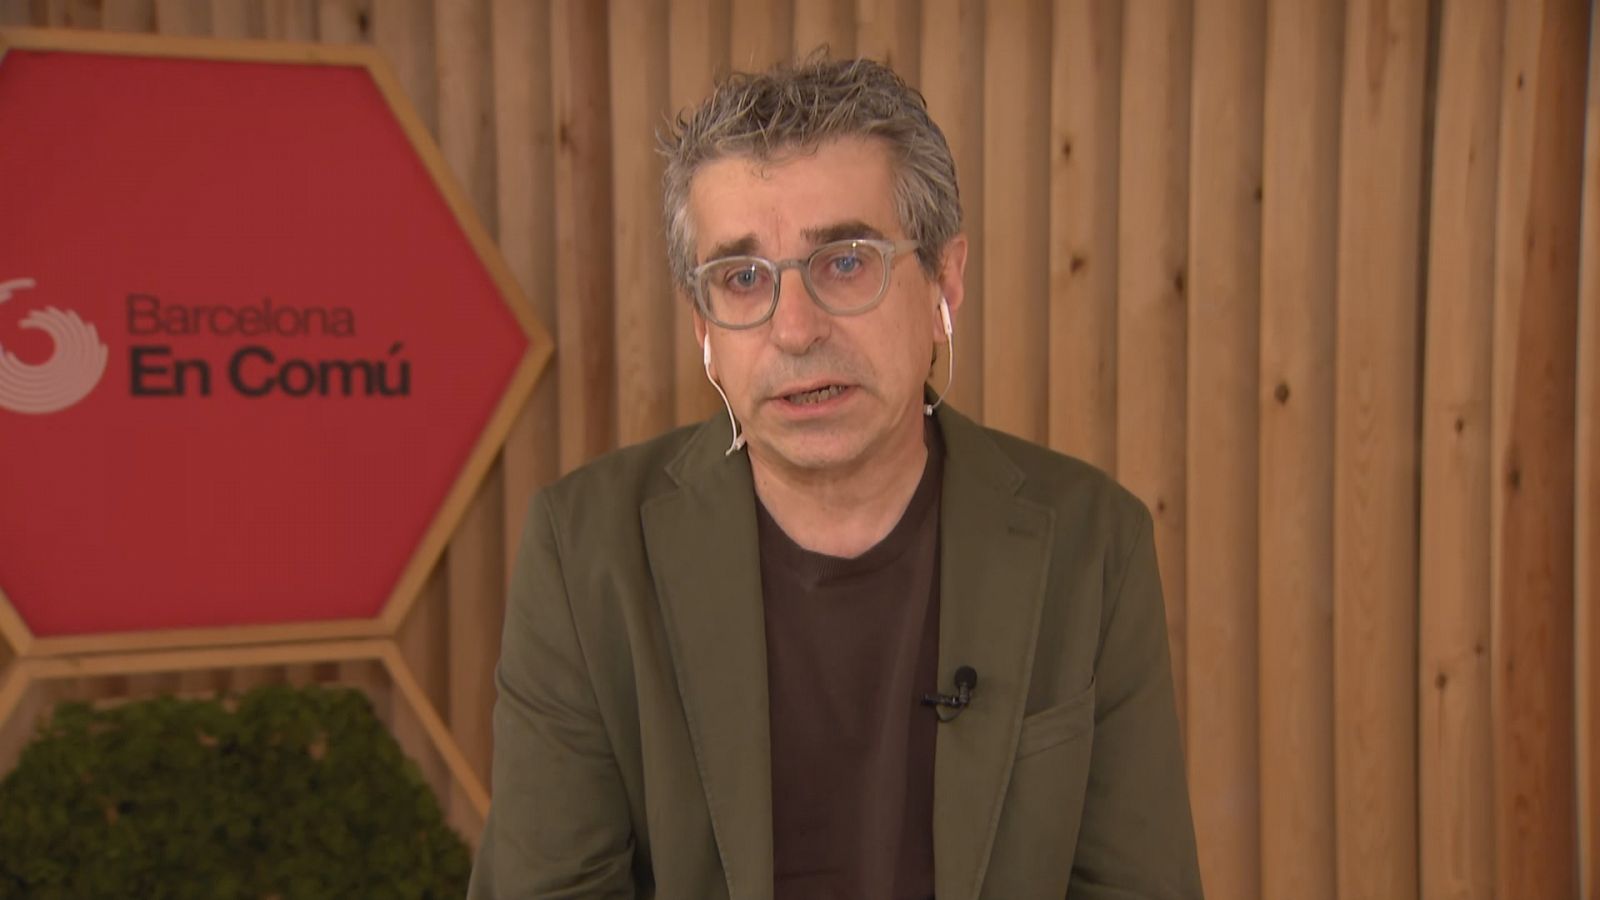 El regidor de BCN en Comú, Jordi Martí, intervé al Cafè d'Idees